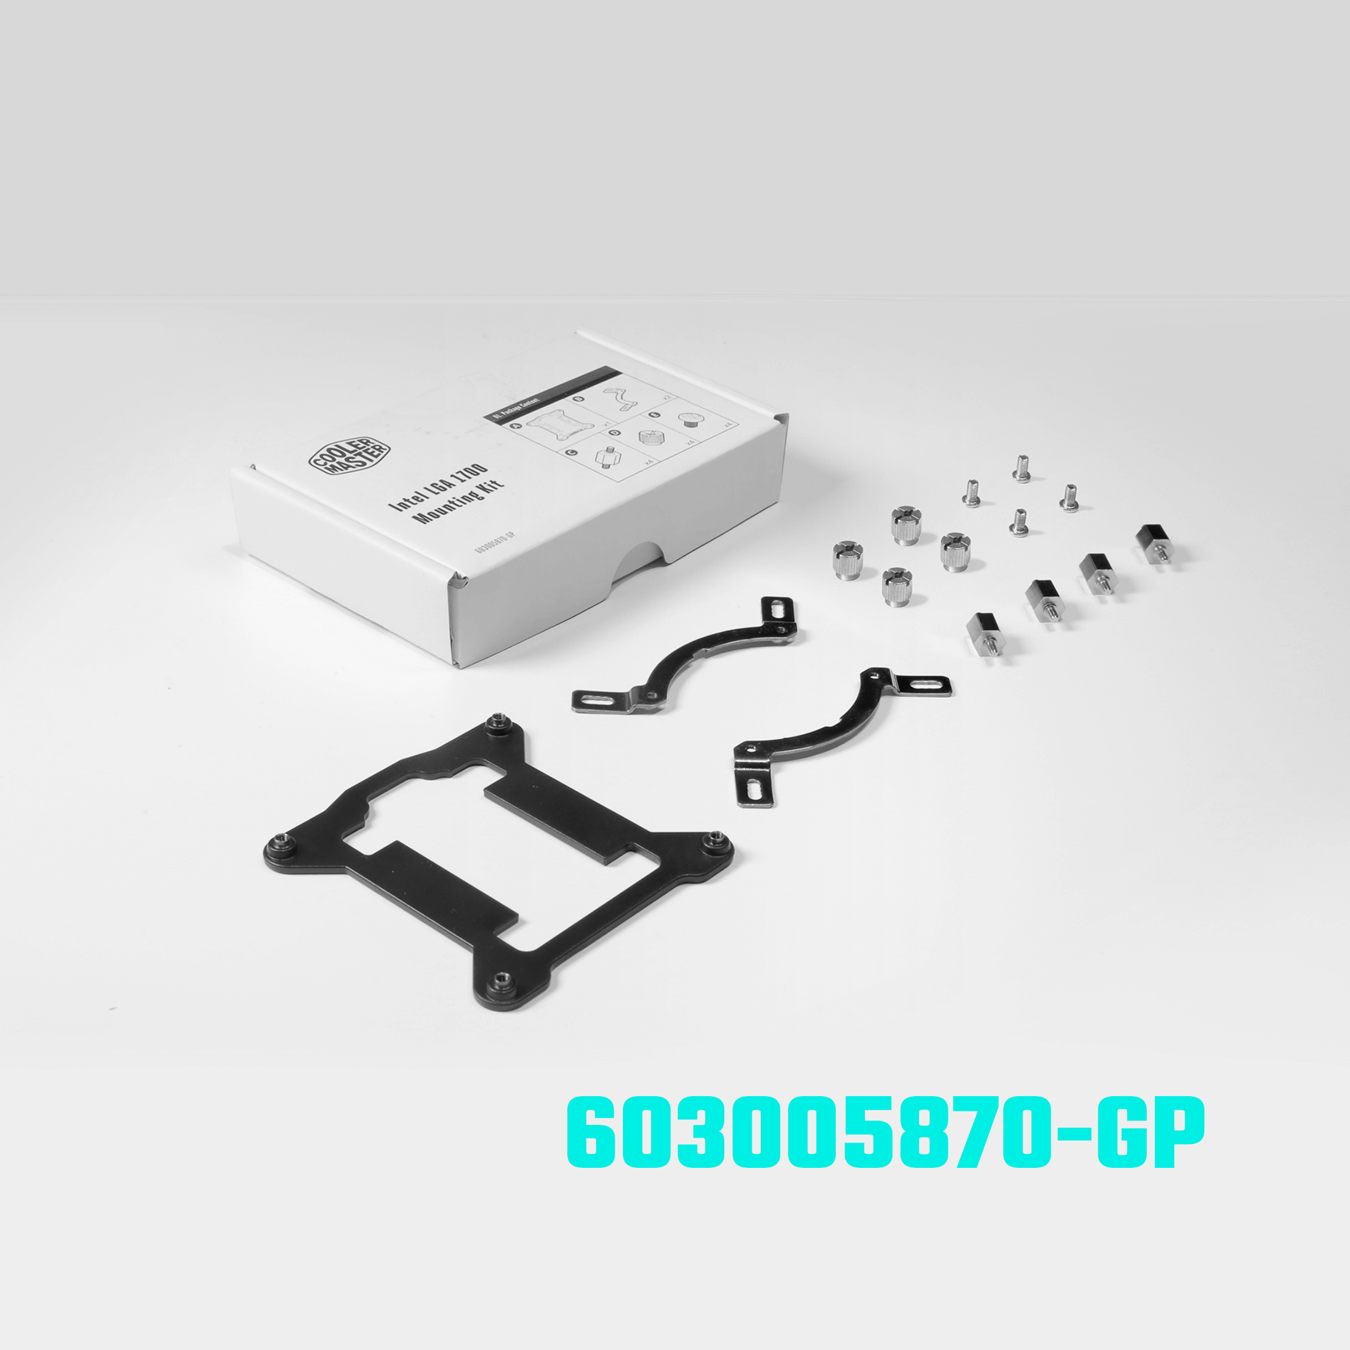 Kit di aggiornamento LGA 1700 per la serie MasterLiquid - 603005870-GP